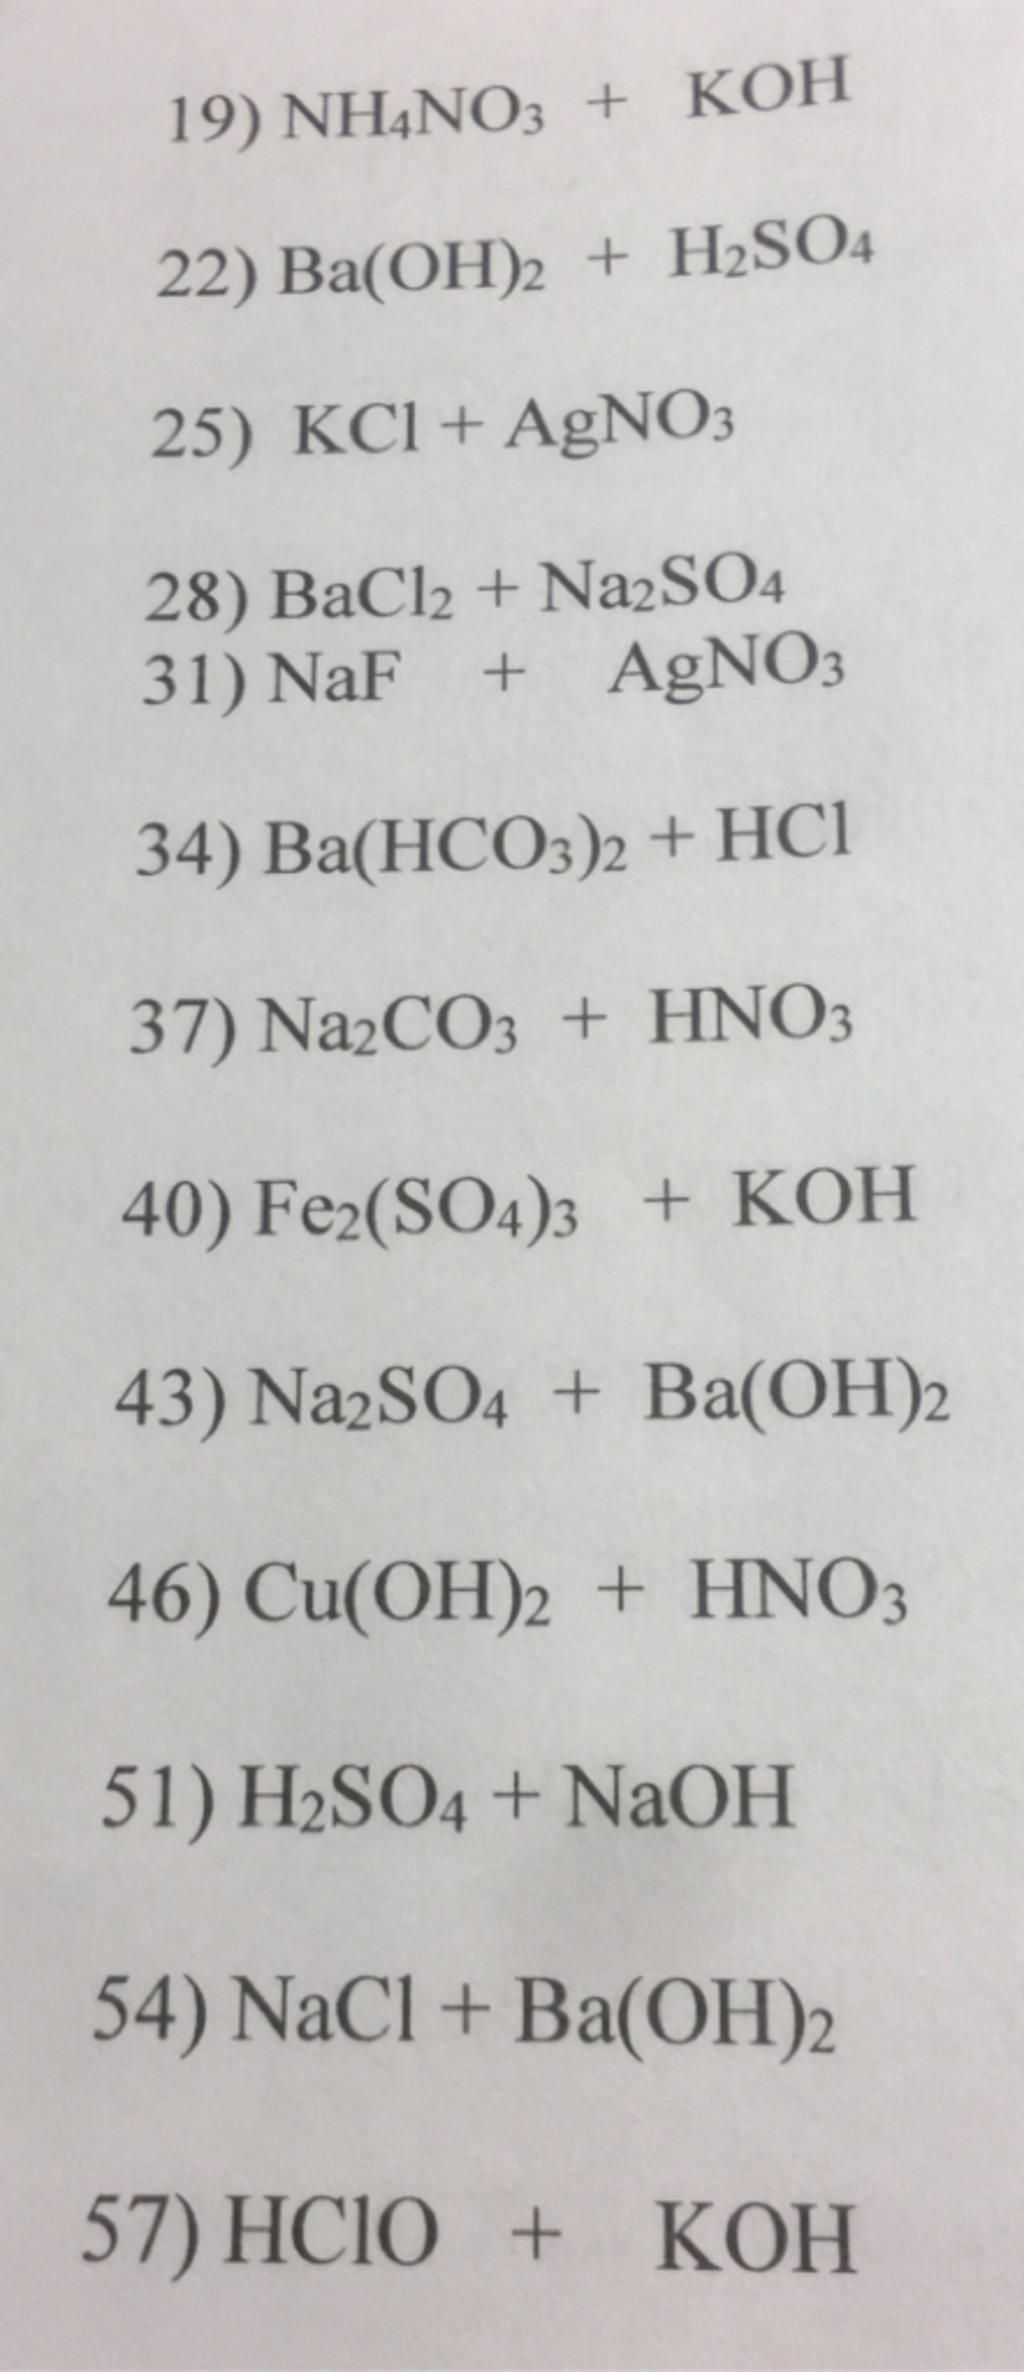 Những phương trình phân tử, phương trình ion đầy đủ và phương trình ion rút gọn các phản ứng giữa NH4NO3 và NaOH là gì?
